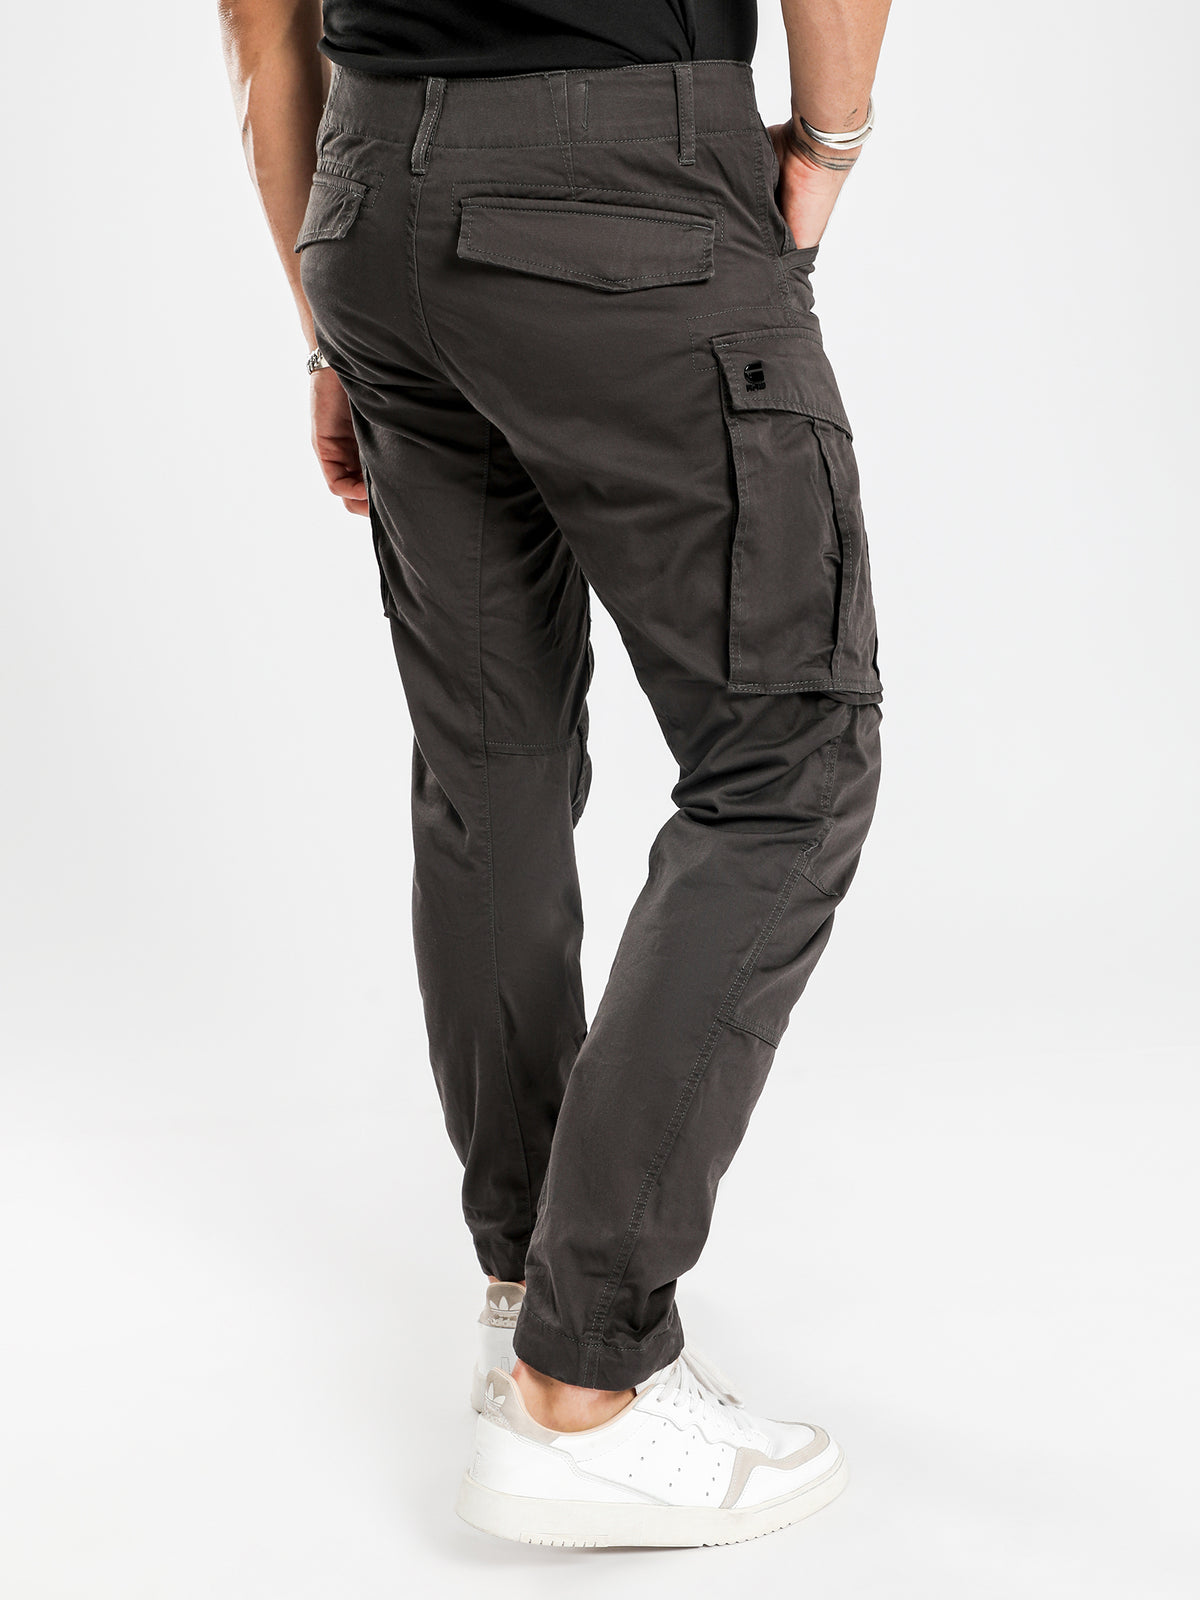 Rovic Zip 3D Tapered Cargo Pants in Raven Grey